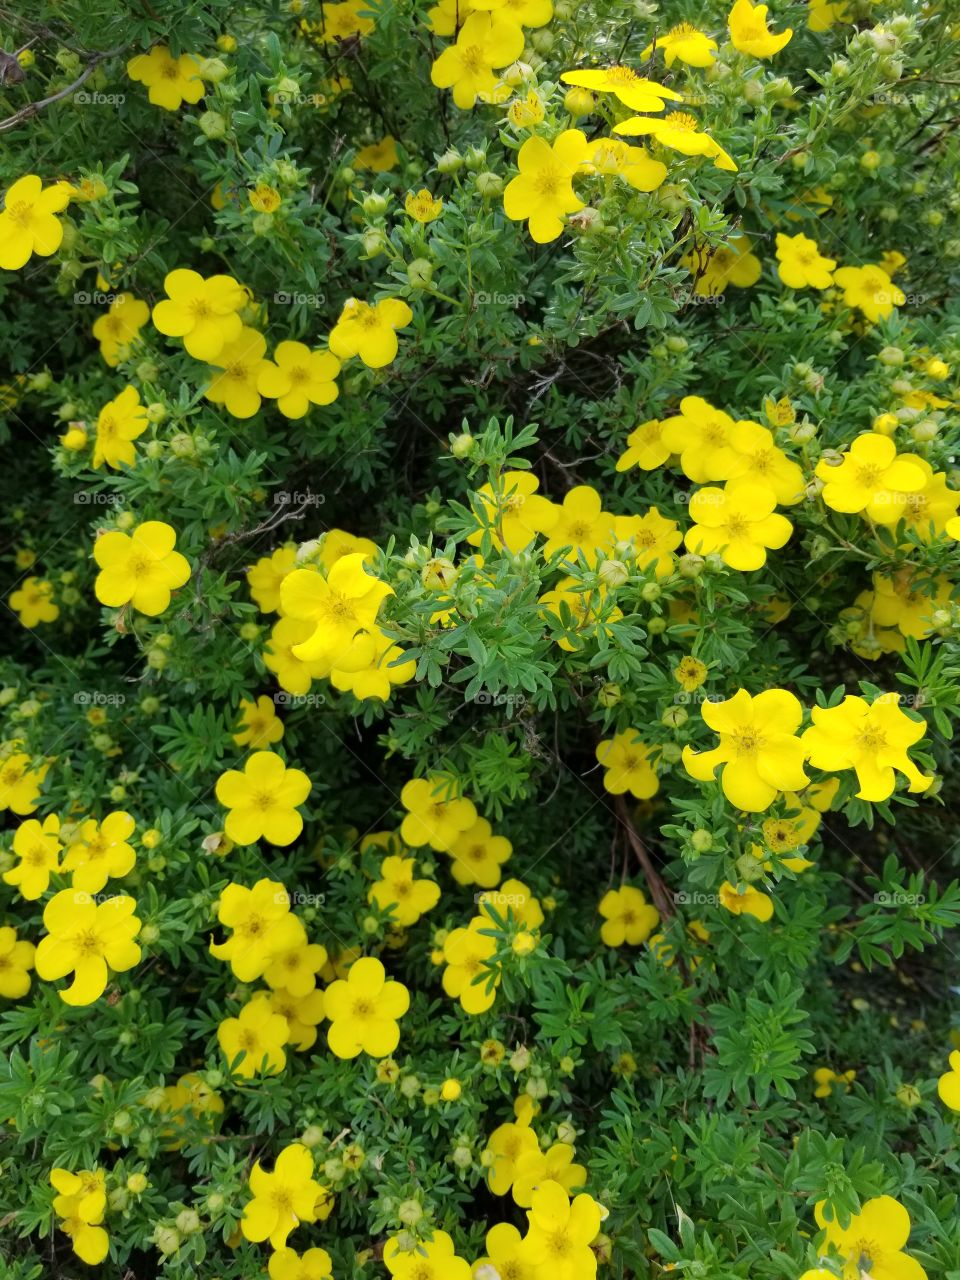 Beautiful full bloom yellow flower bush in July.